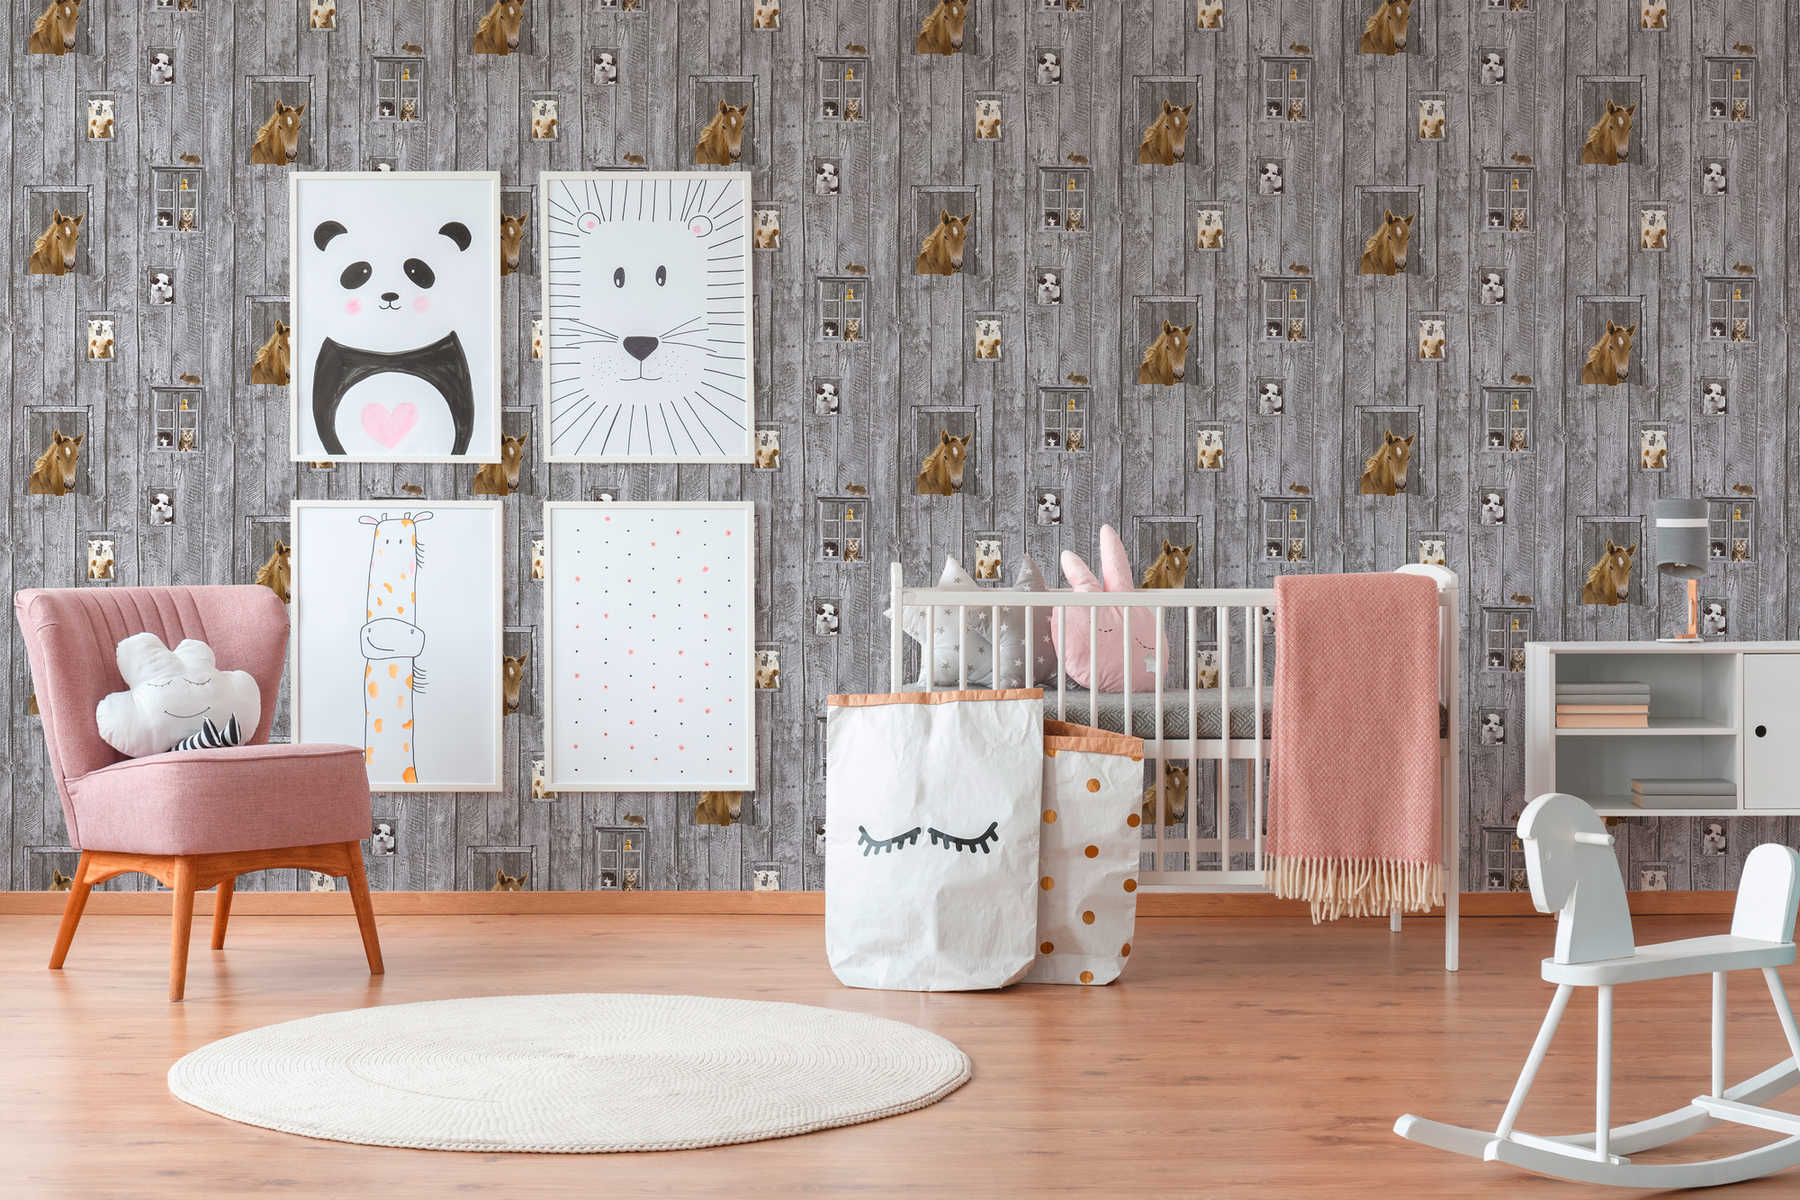             Papier peint chambre enfant Bébés animaux & aspect bois - multicolore, gris
        